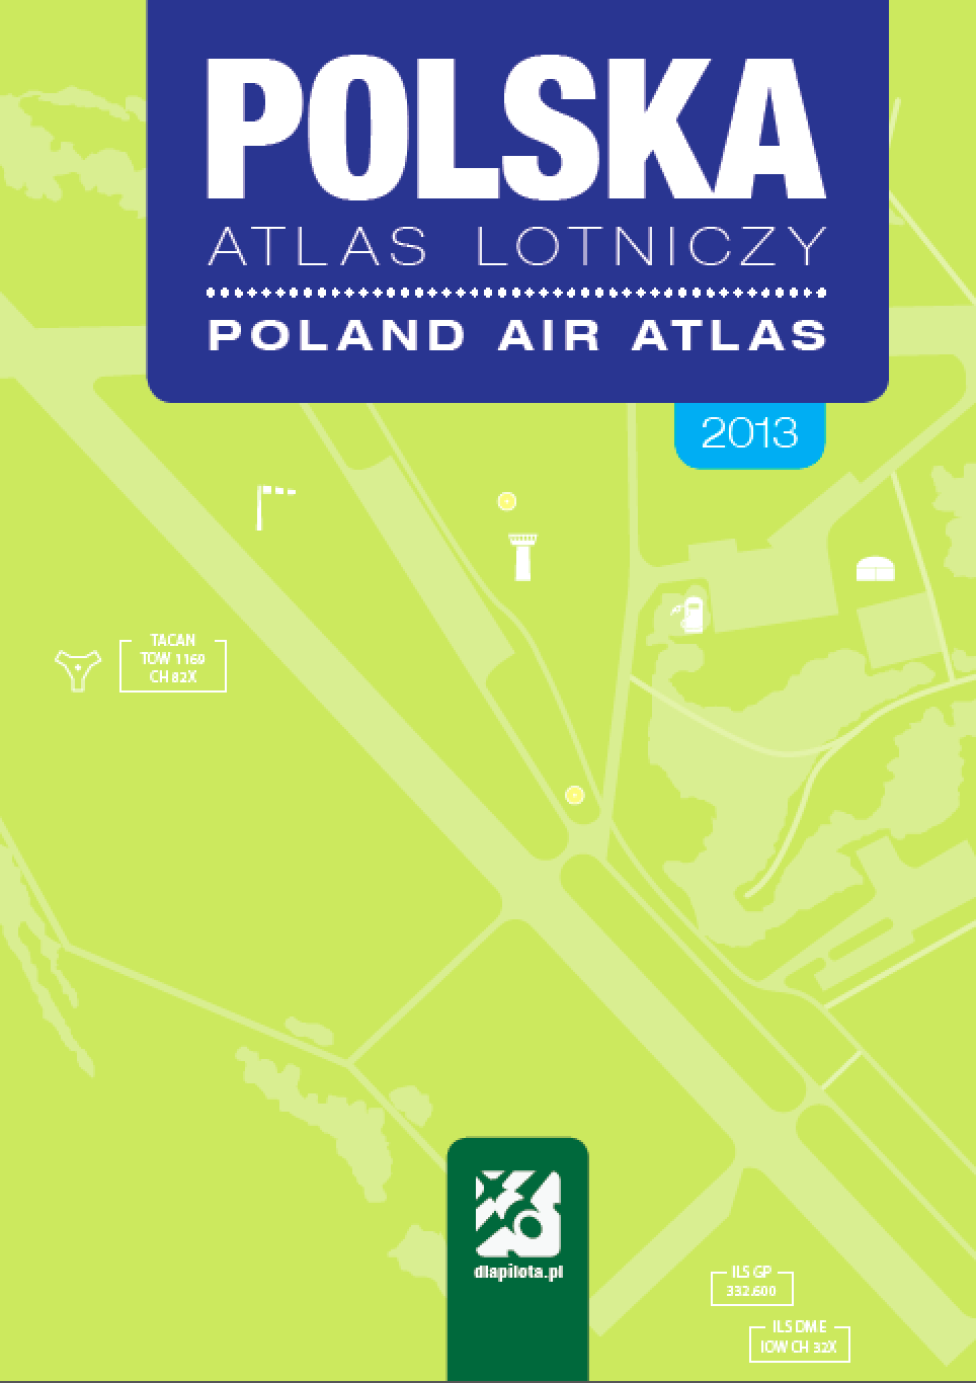 Polska Atlas Lotniczy 2013 wydawnictwo: dlapilota.pl, edycja 3 poprawiona